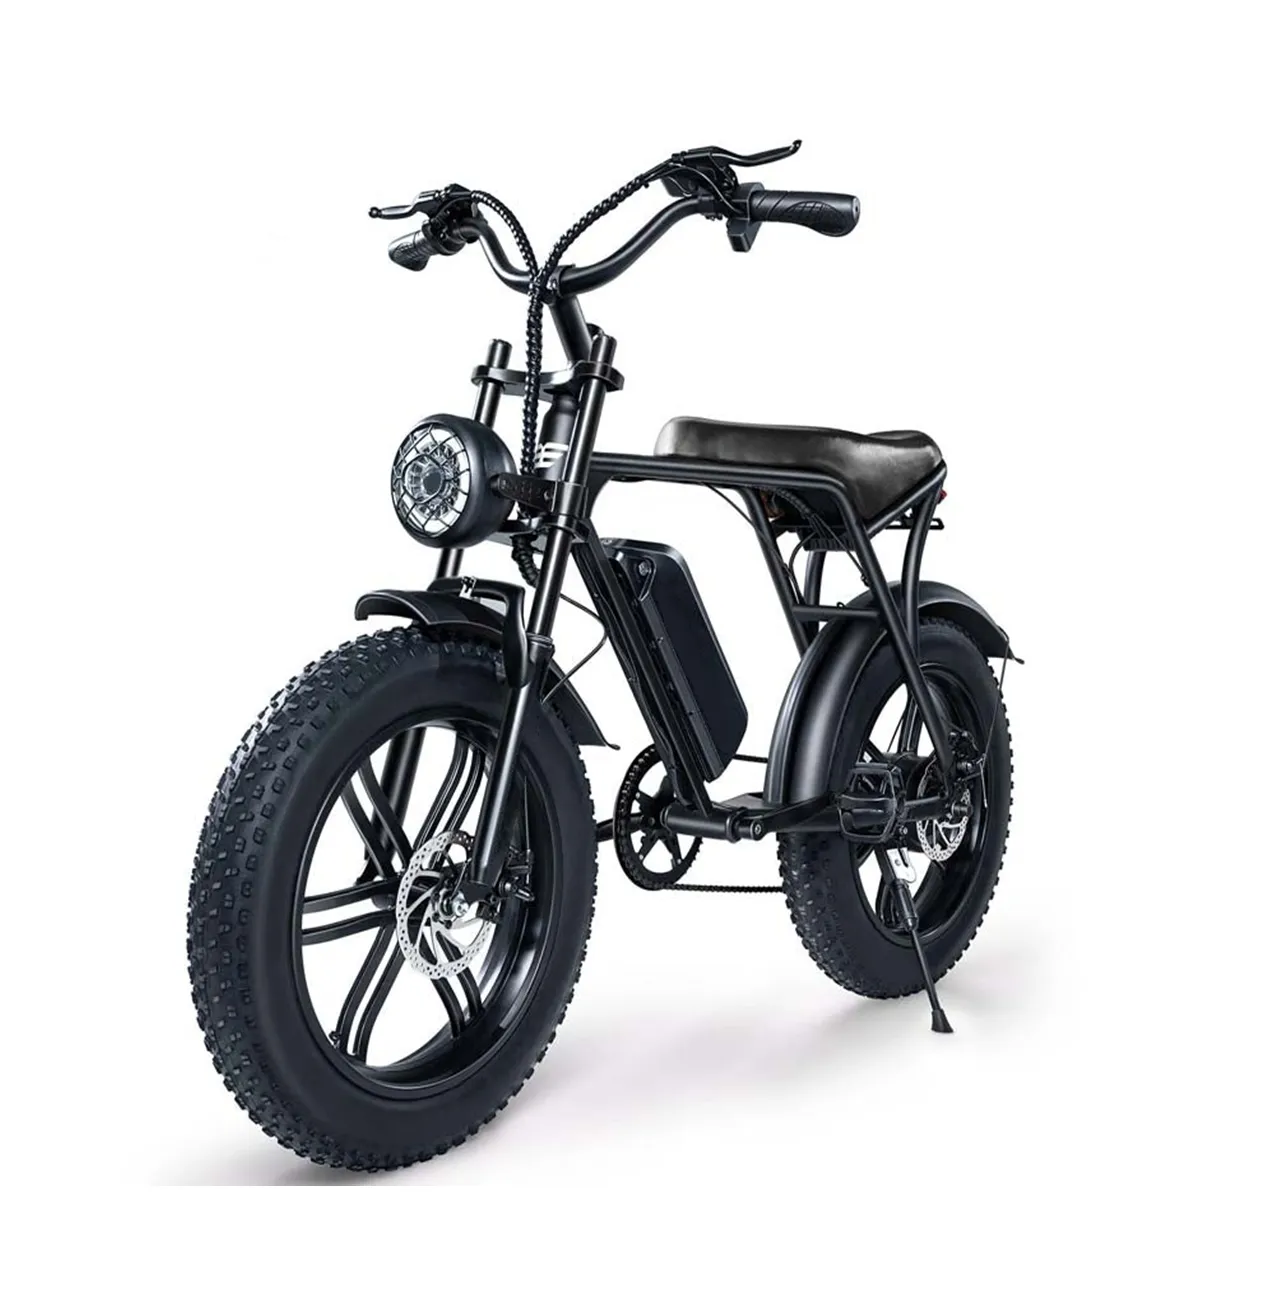 Hot Sale Fat Bike 750W Elektrische Fiets Met 48V 15ah Batterij 48 Km/h Snelheid Pedalen Bromfiets Bicicleta Eletrica